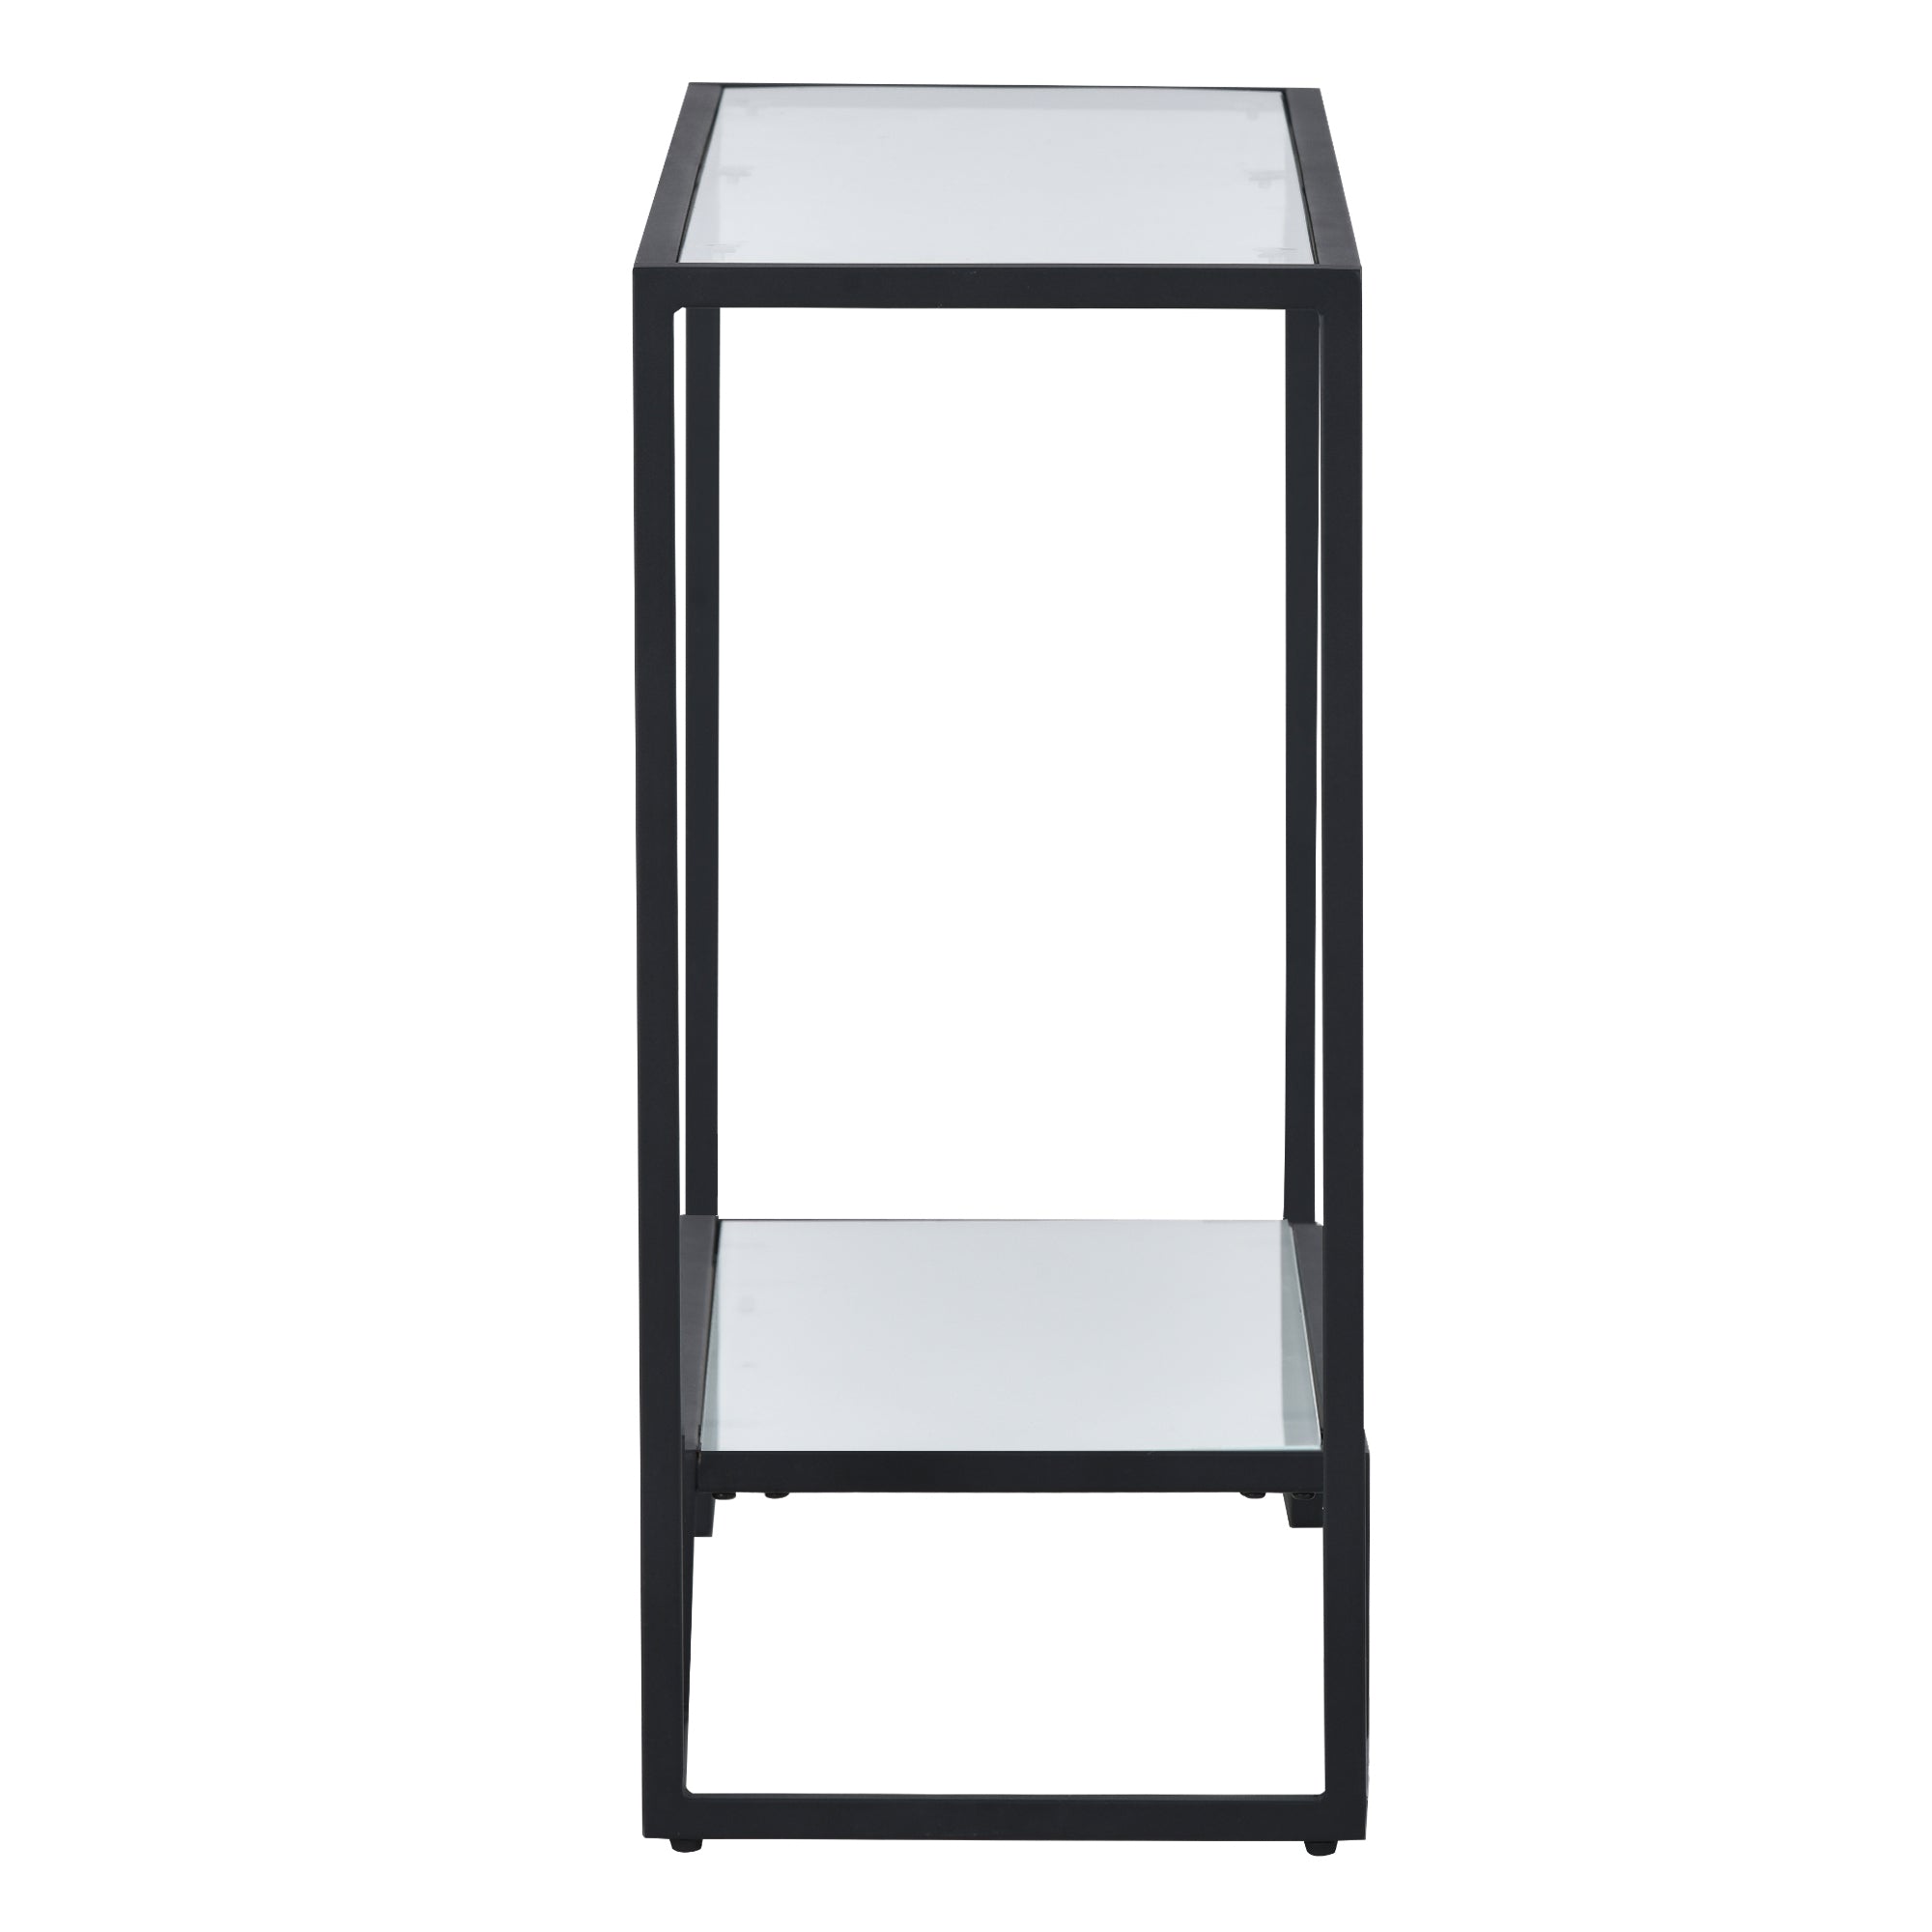 ON-TREND Modern Minimalist Design Living Room Side Table (Black)